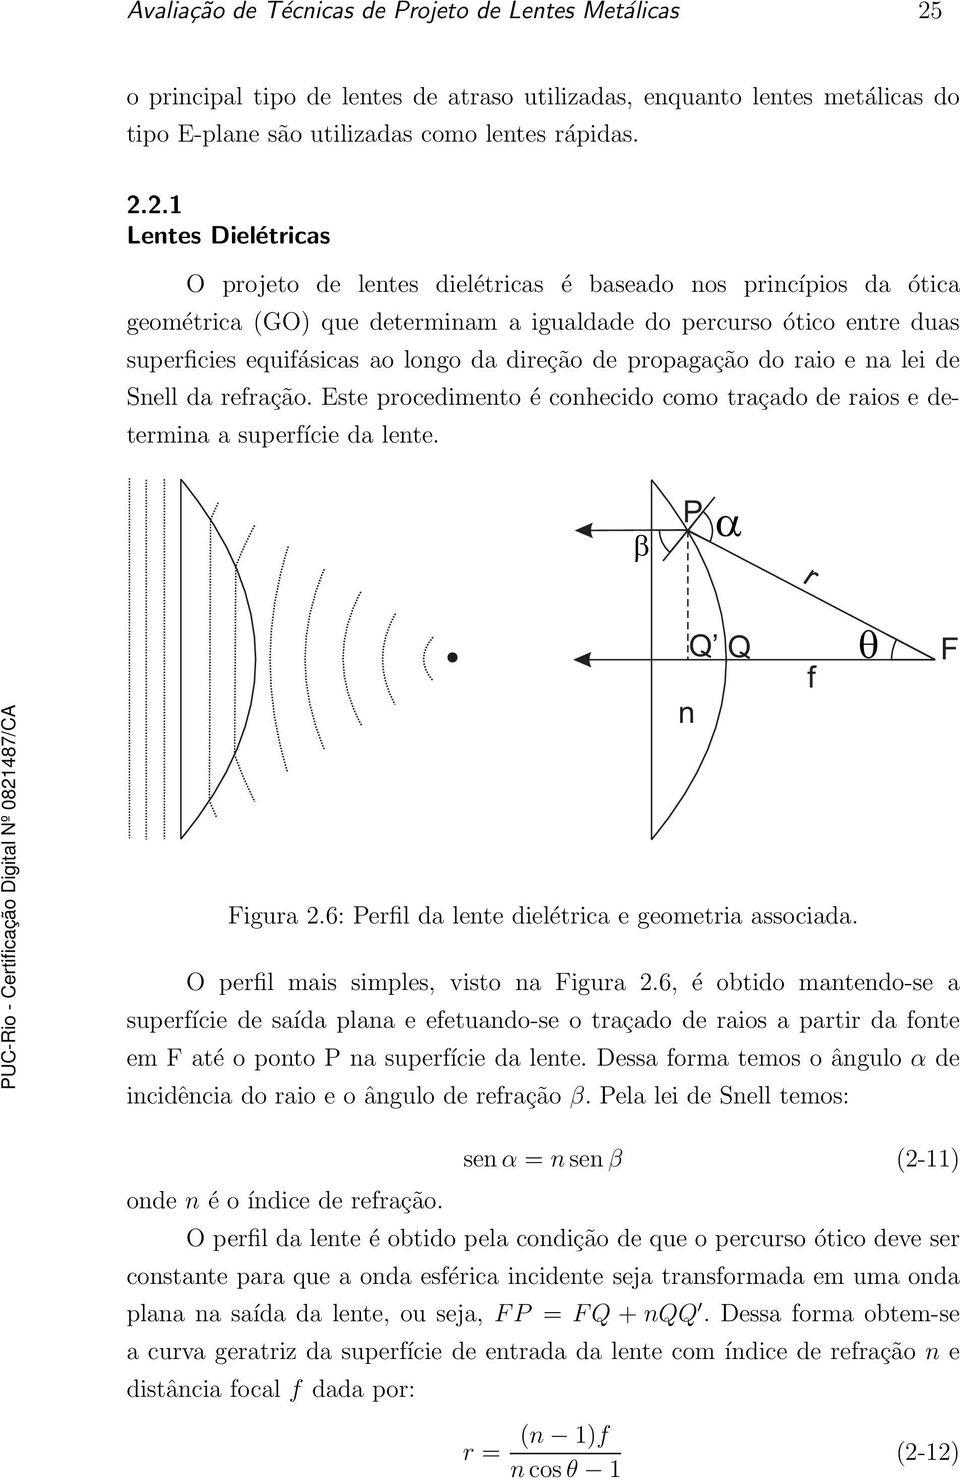 2.1 Lentes Dielétricas O projeto de lentes dielétricas é baseado nos princípios da ótica geométrica (GO) que determinam a igualdade do percurso ótico entre duas superficies equifásicas ao longo da